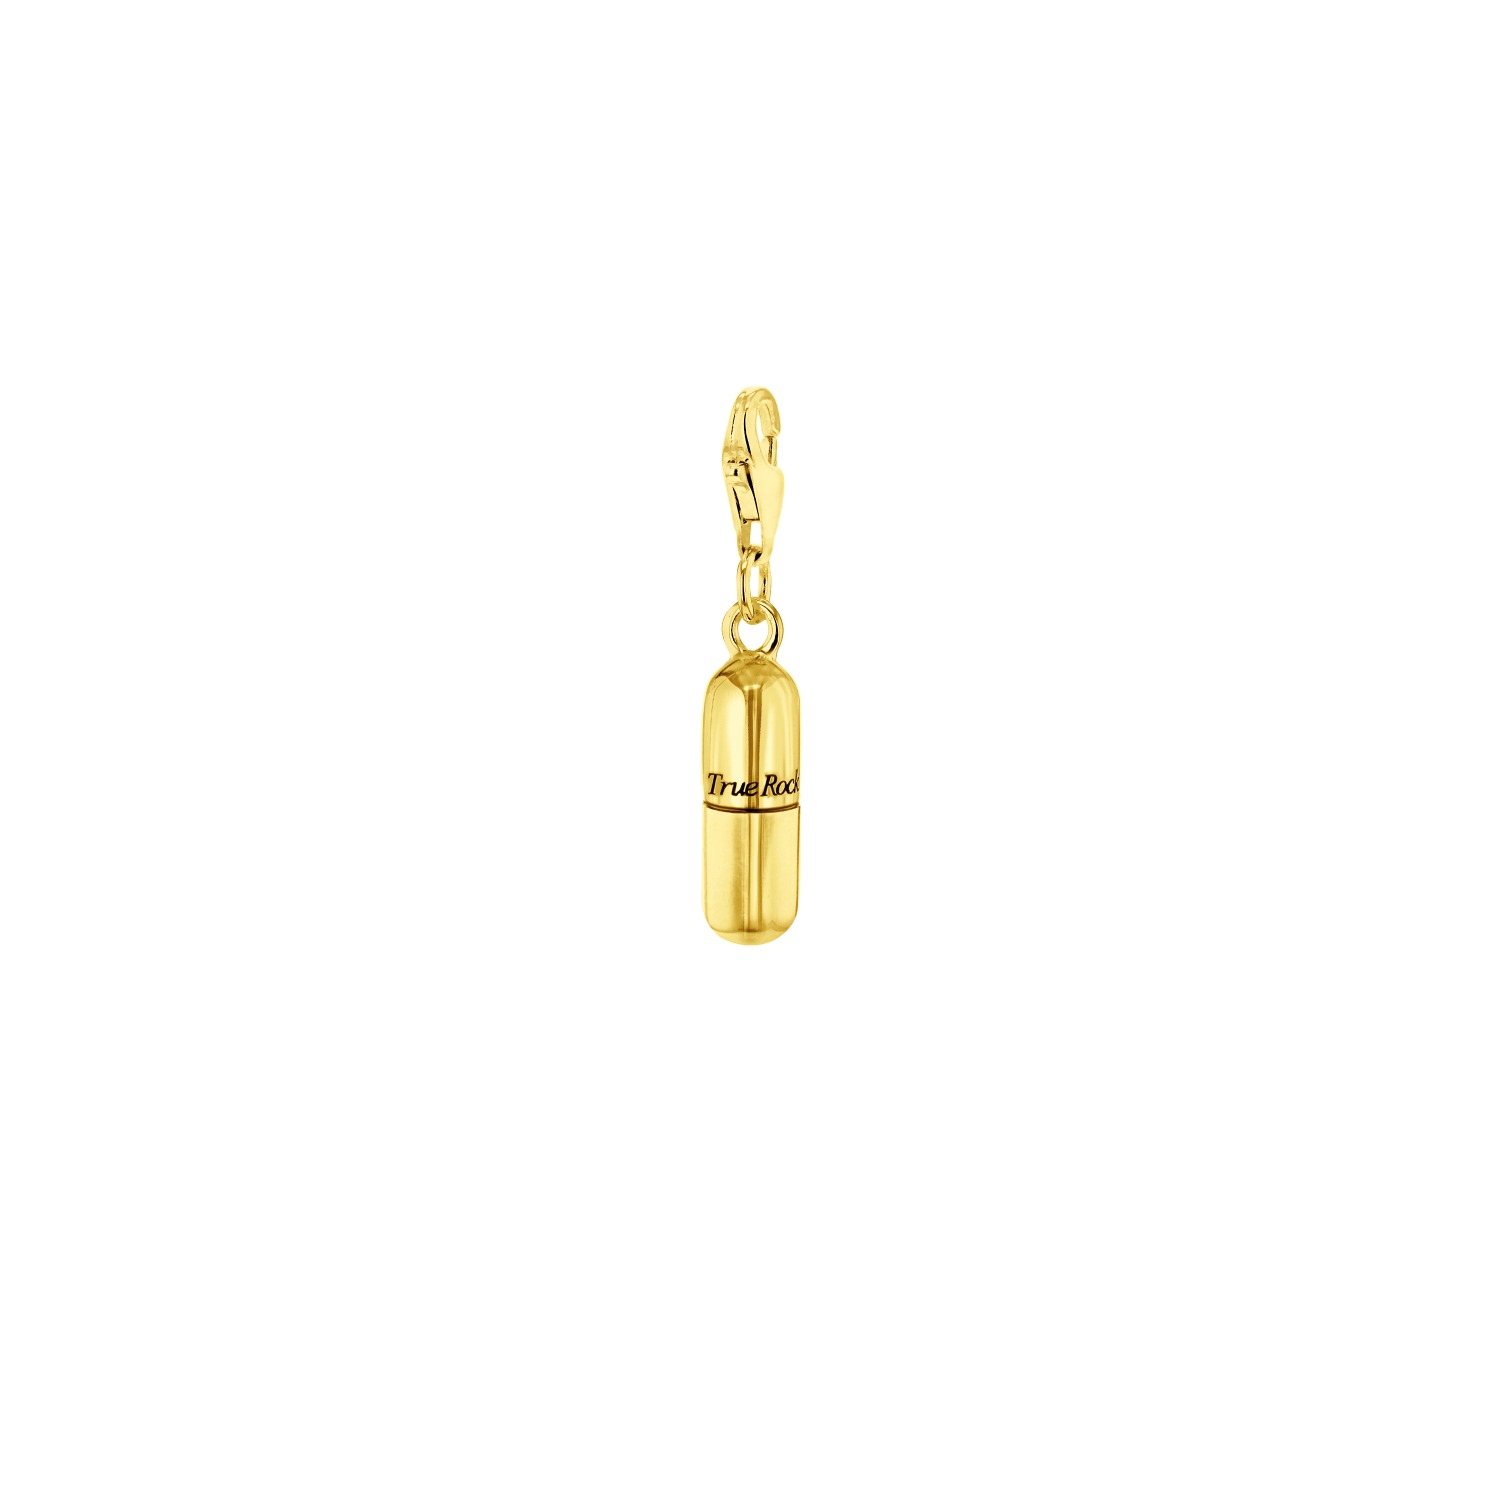 True Rocks Women's 18kt Gold-plated Mini Pill Charm